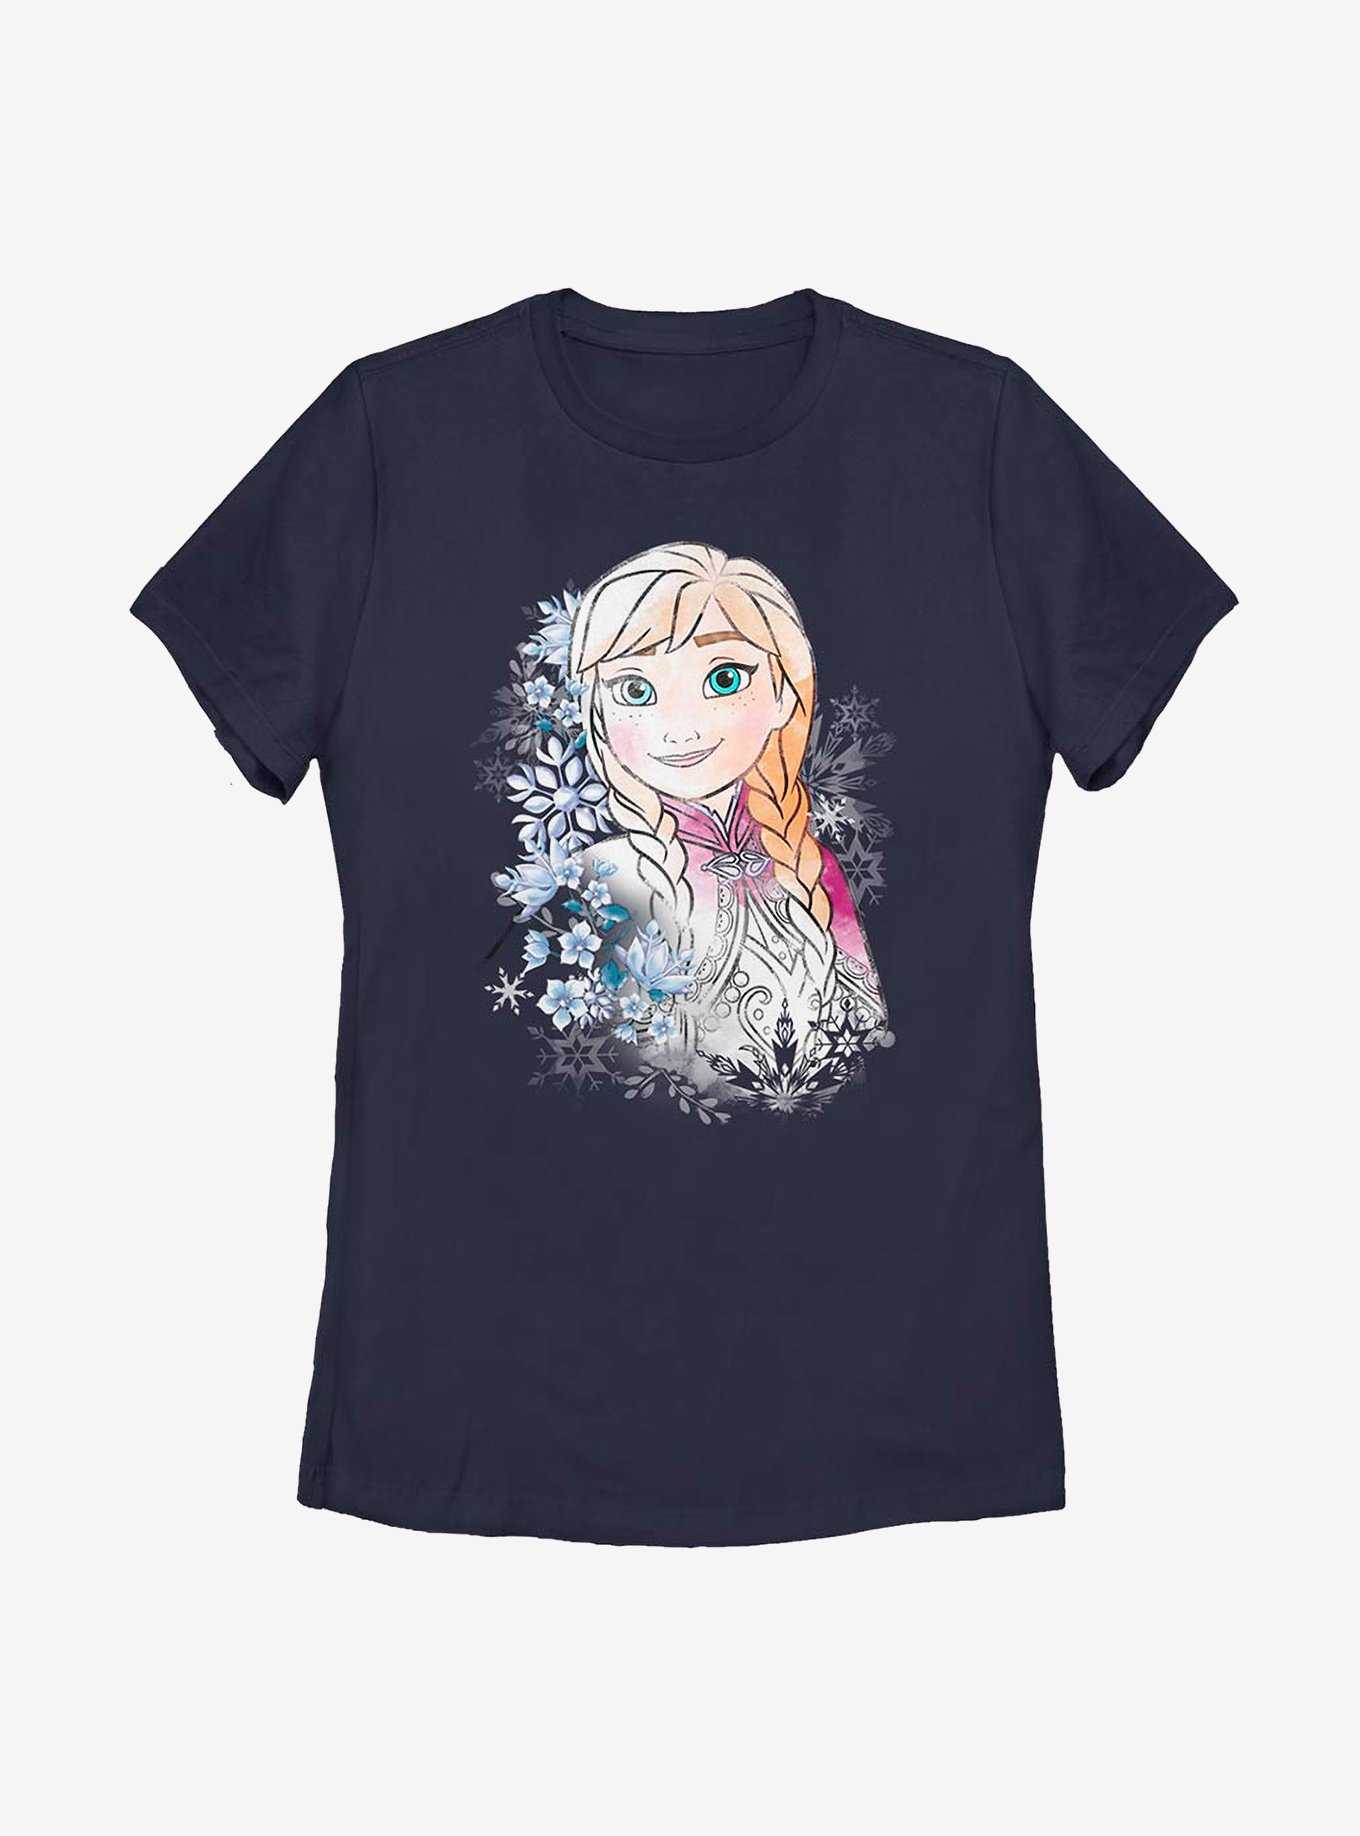 Disney Frozen Anna Flowers Womens T-Shirt, , hi-res